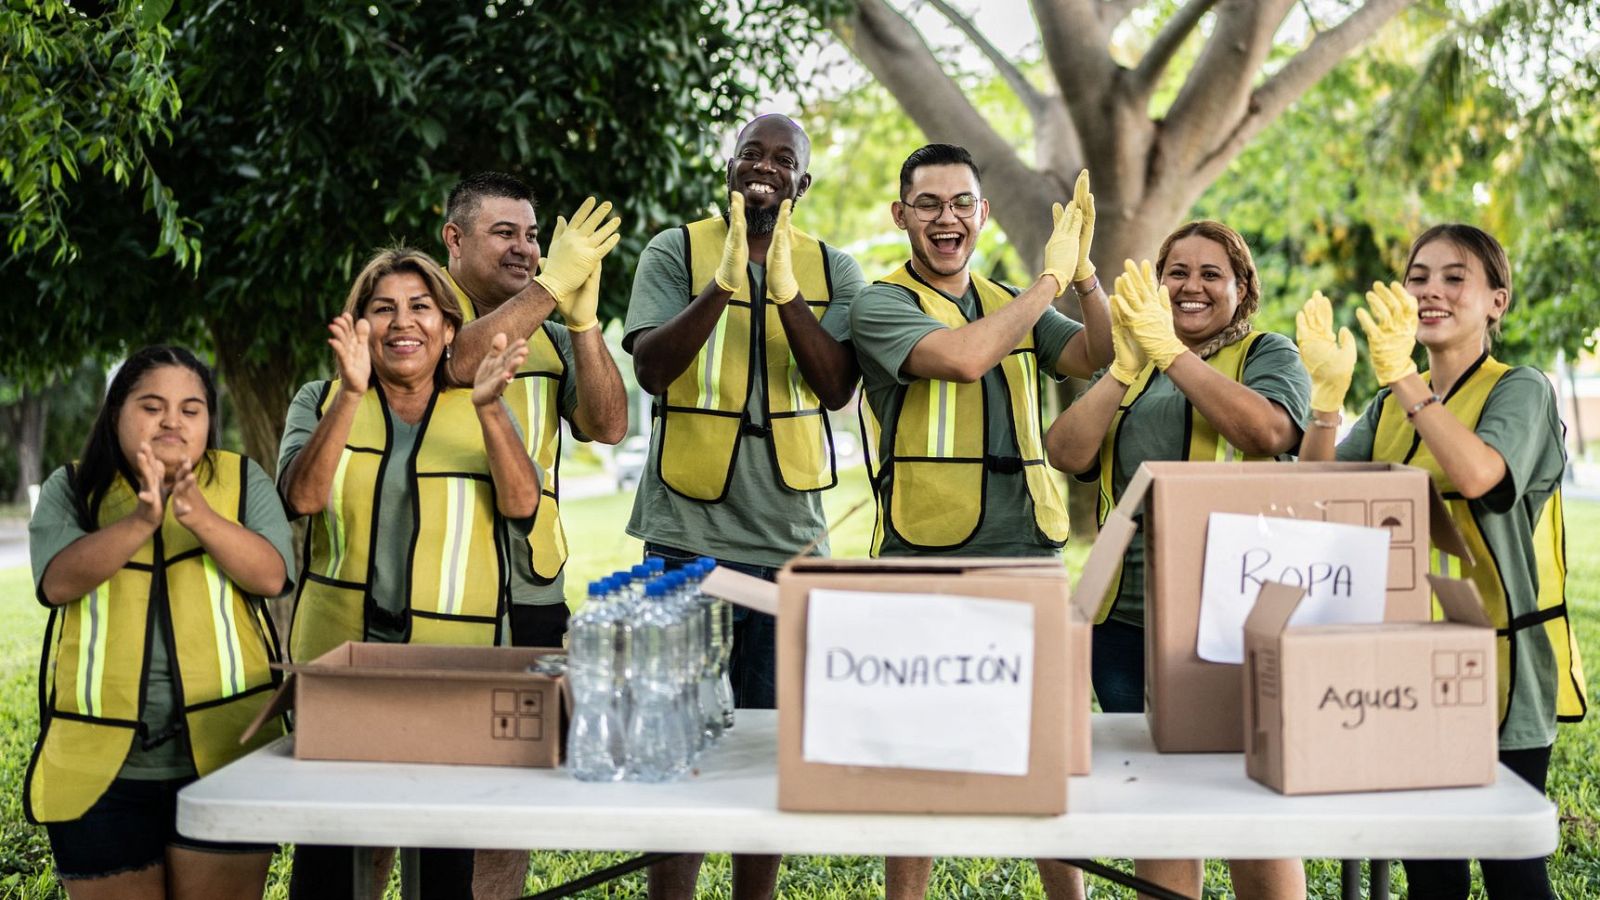 Un grupo de personas con chalecos amarillos aplaude junto a unas cajas de cartón con etiquetas de ropa, agua y donaciones.